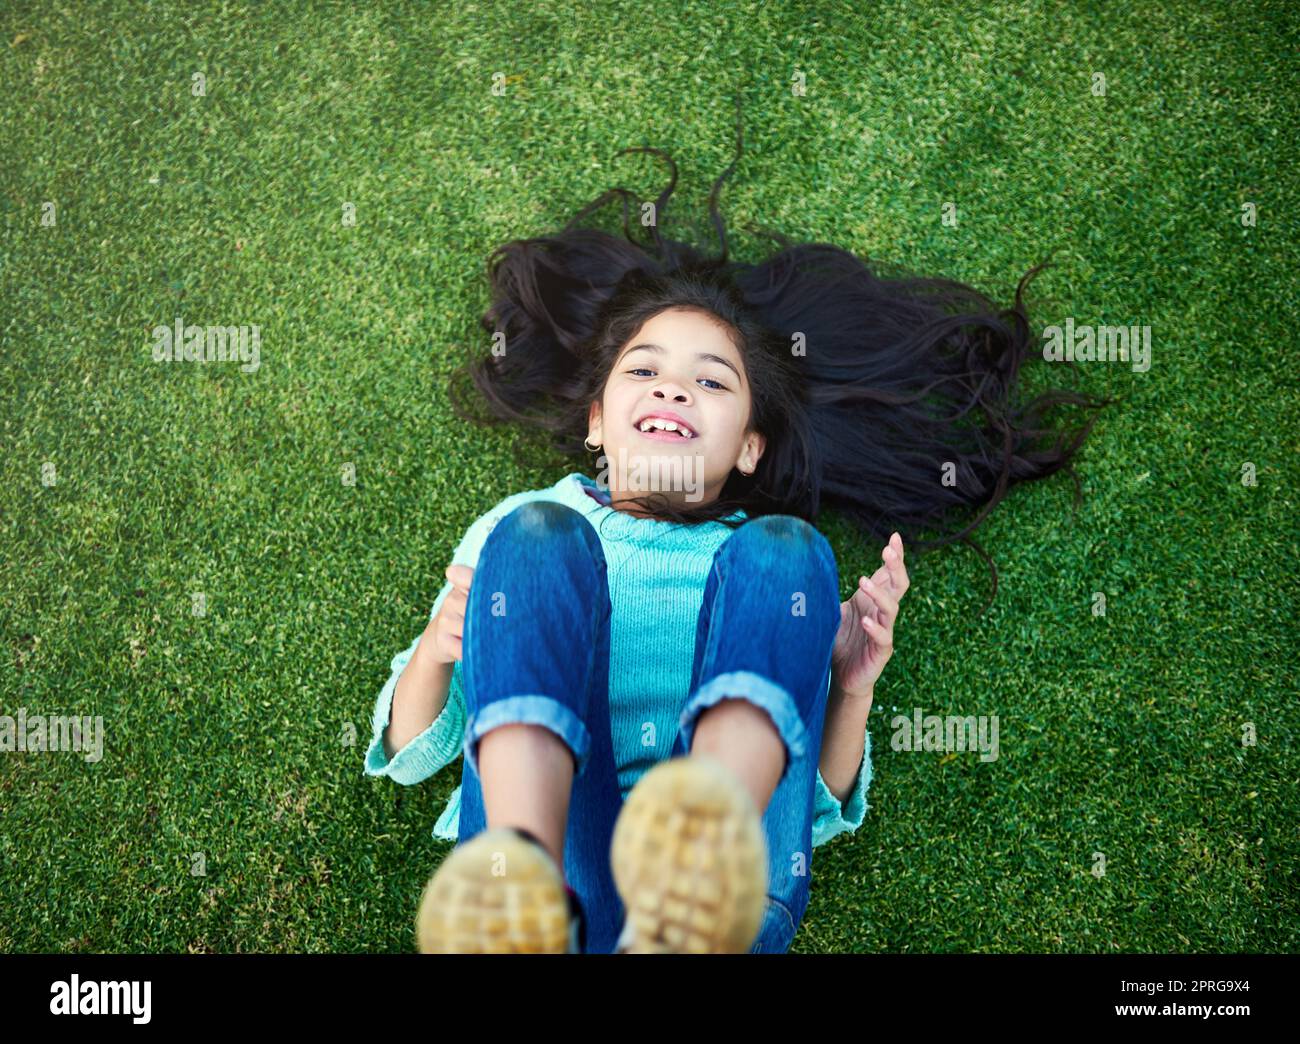 Der Inbegriff einer unbeschwerten Kindheit. Porträt eines glücklichen kleinen Mädchens, das draußen auf dem Rasen spielt. Stockfoto